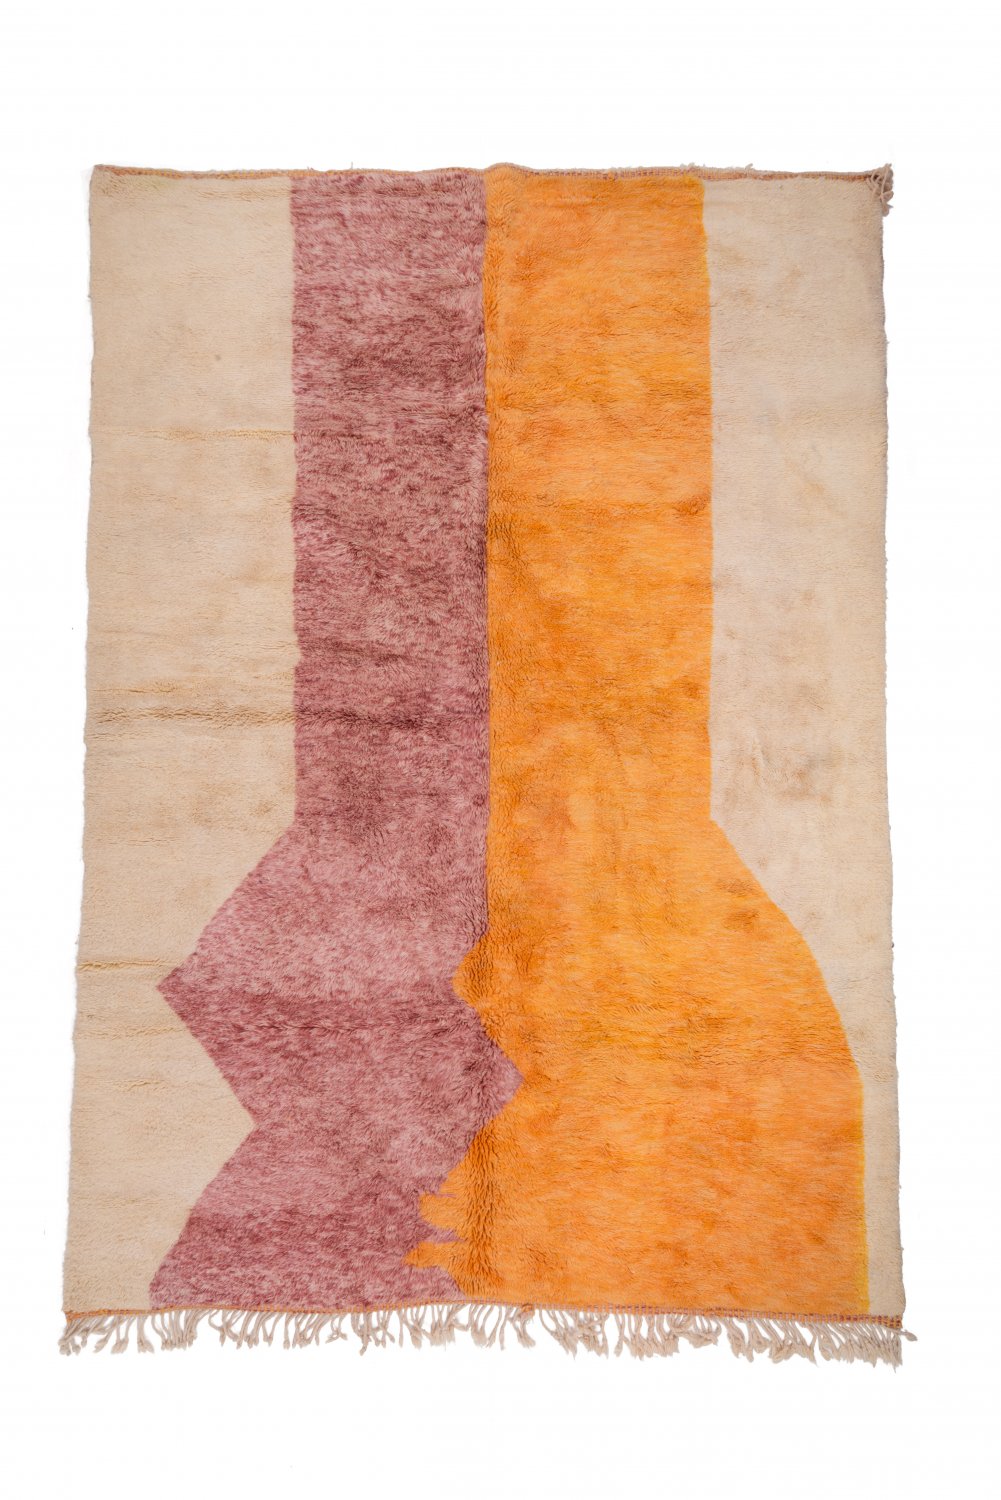 Marokkolainen Kilim matto Azilal 370 x 260 cm